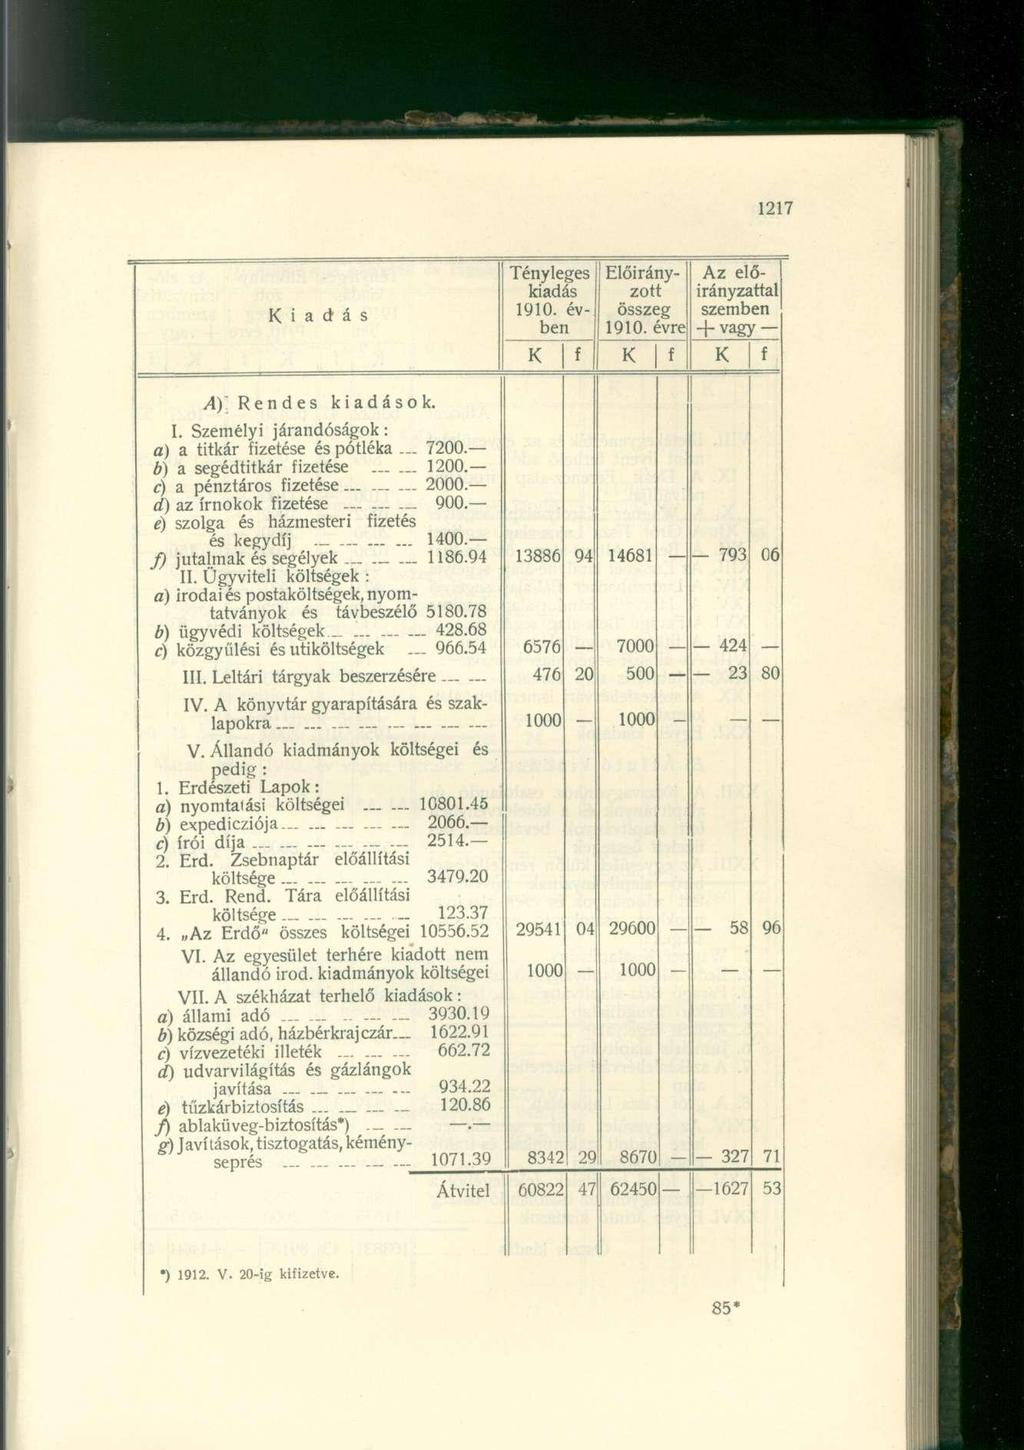 iadás Tényleges kiadás 1910. évben Előirányzott összeg 1910. évre Az előirányzattal szemben -f-vagy f f f A) Rendes kiadások. I. Személyi járandóságok: a) a titkár fizetése és pótléka 7200.